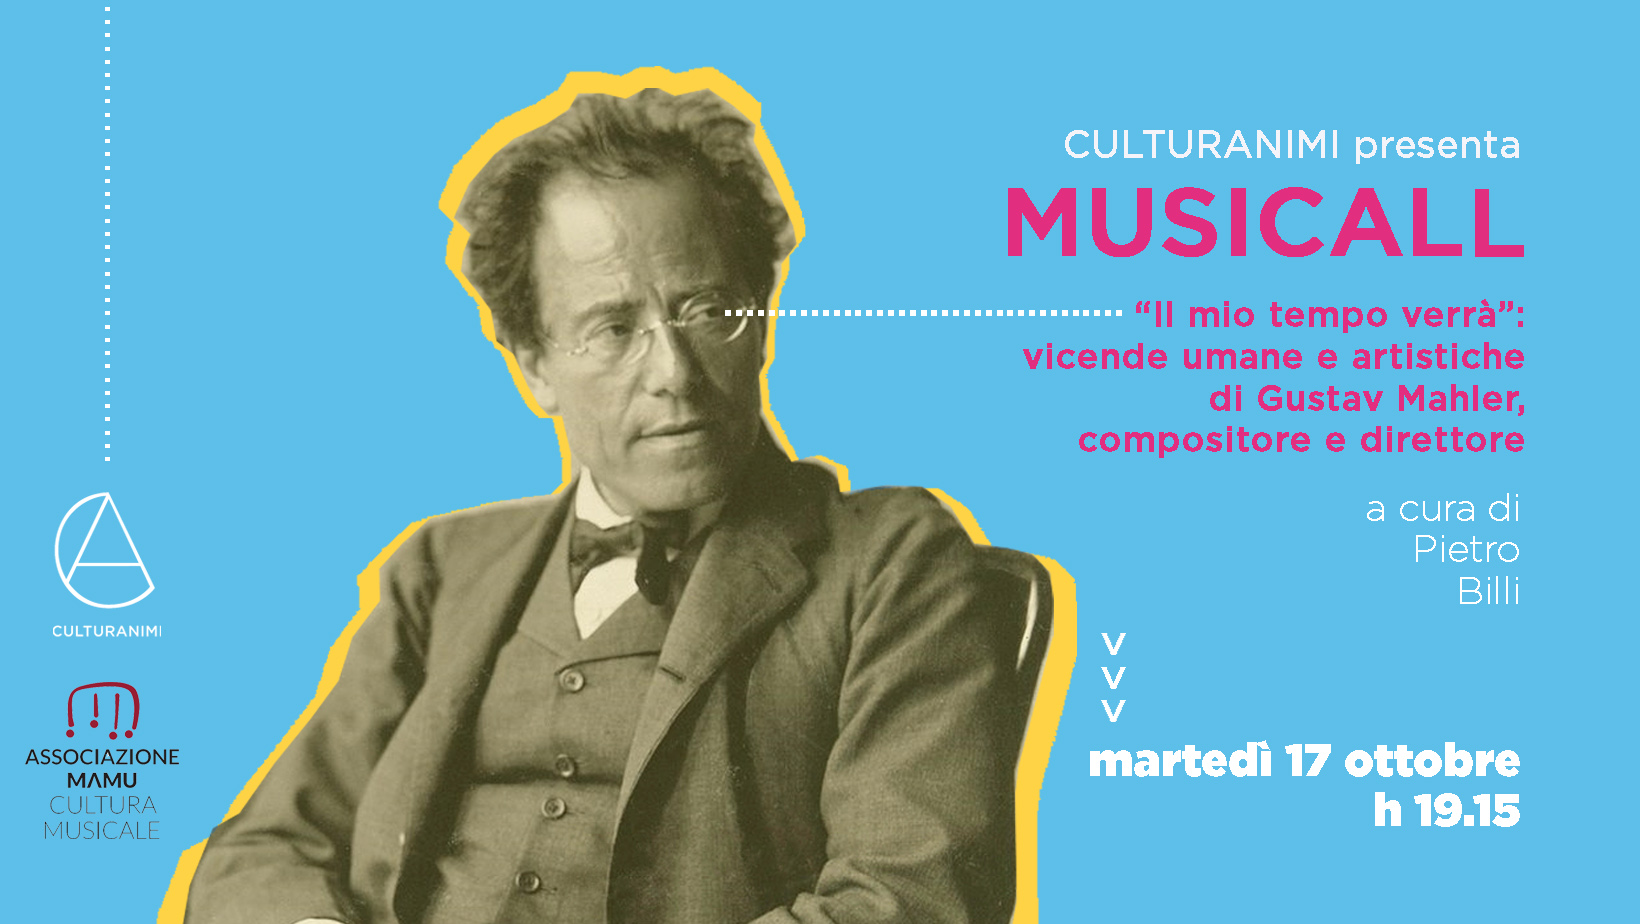 Culturanimi - Mahler